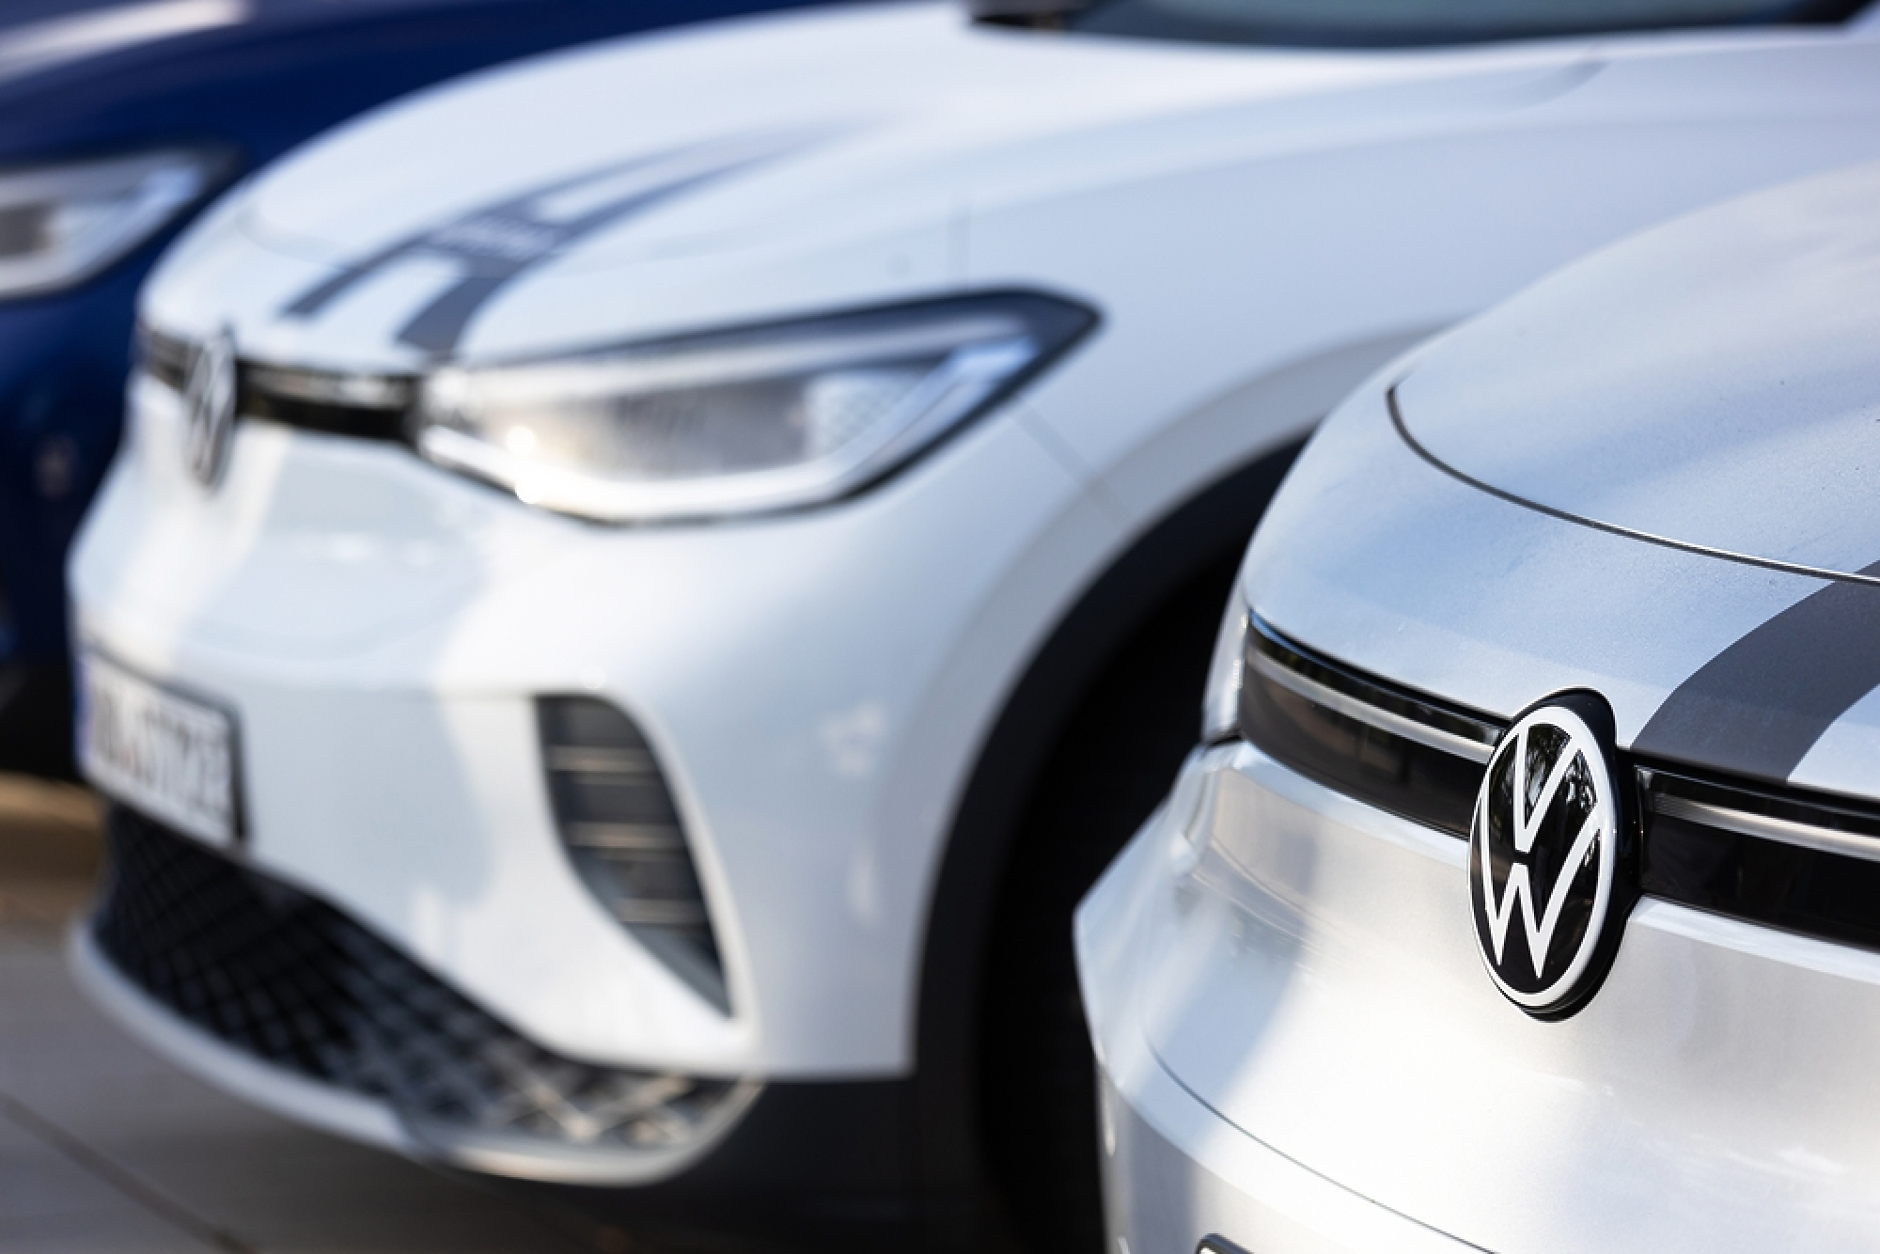  Volkswagen  влага 1,8 млрд. долара в модернизация на заводите си в Бразилия 